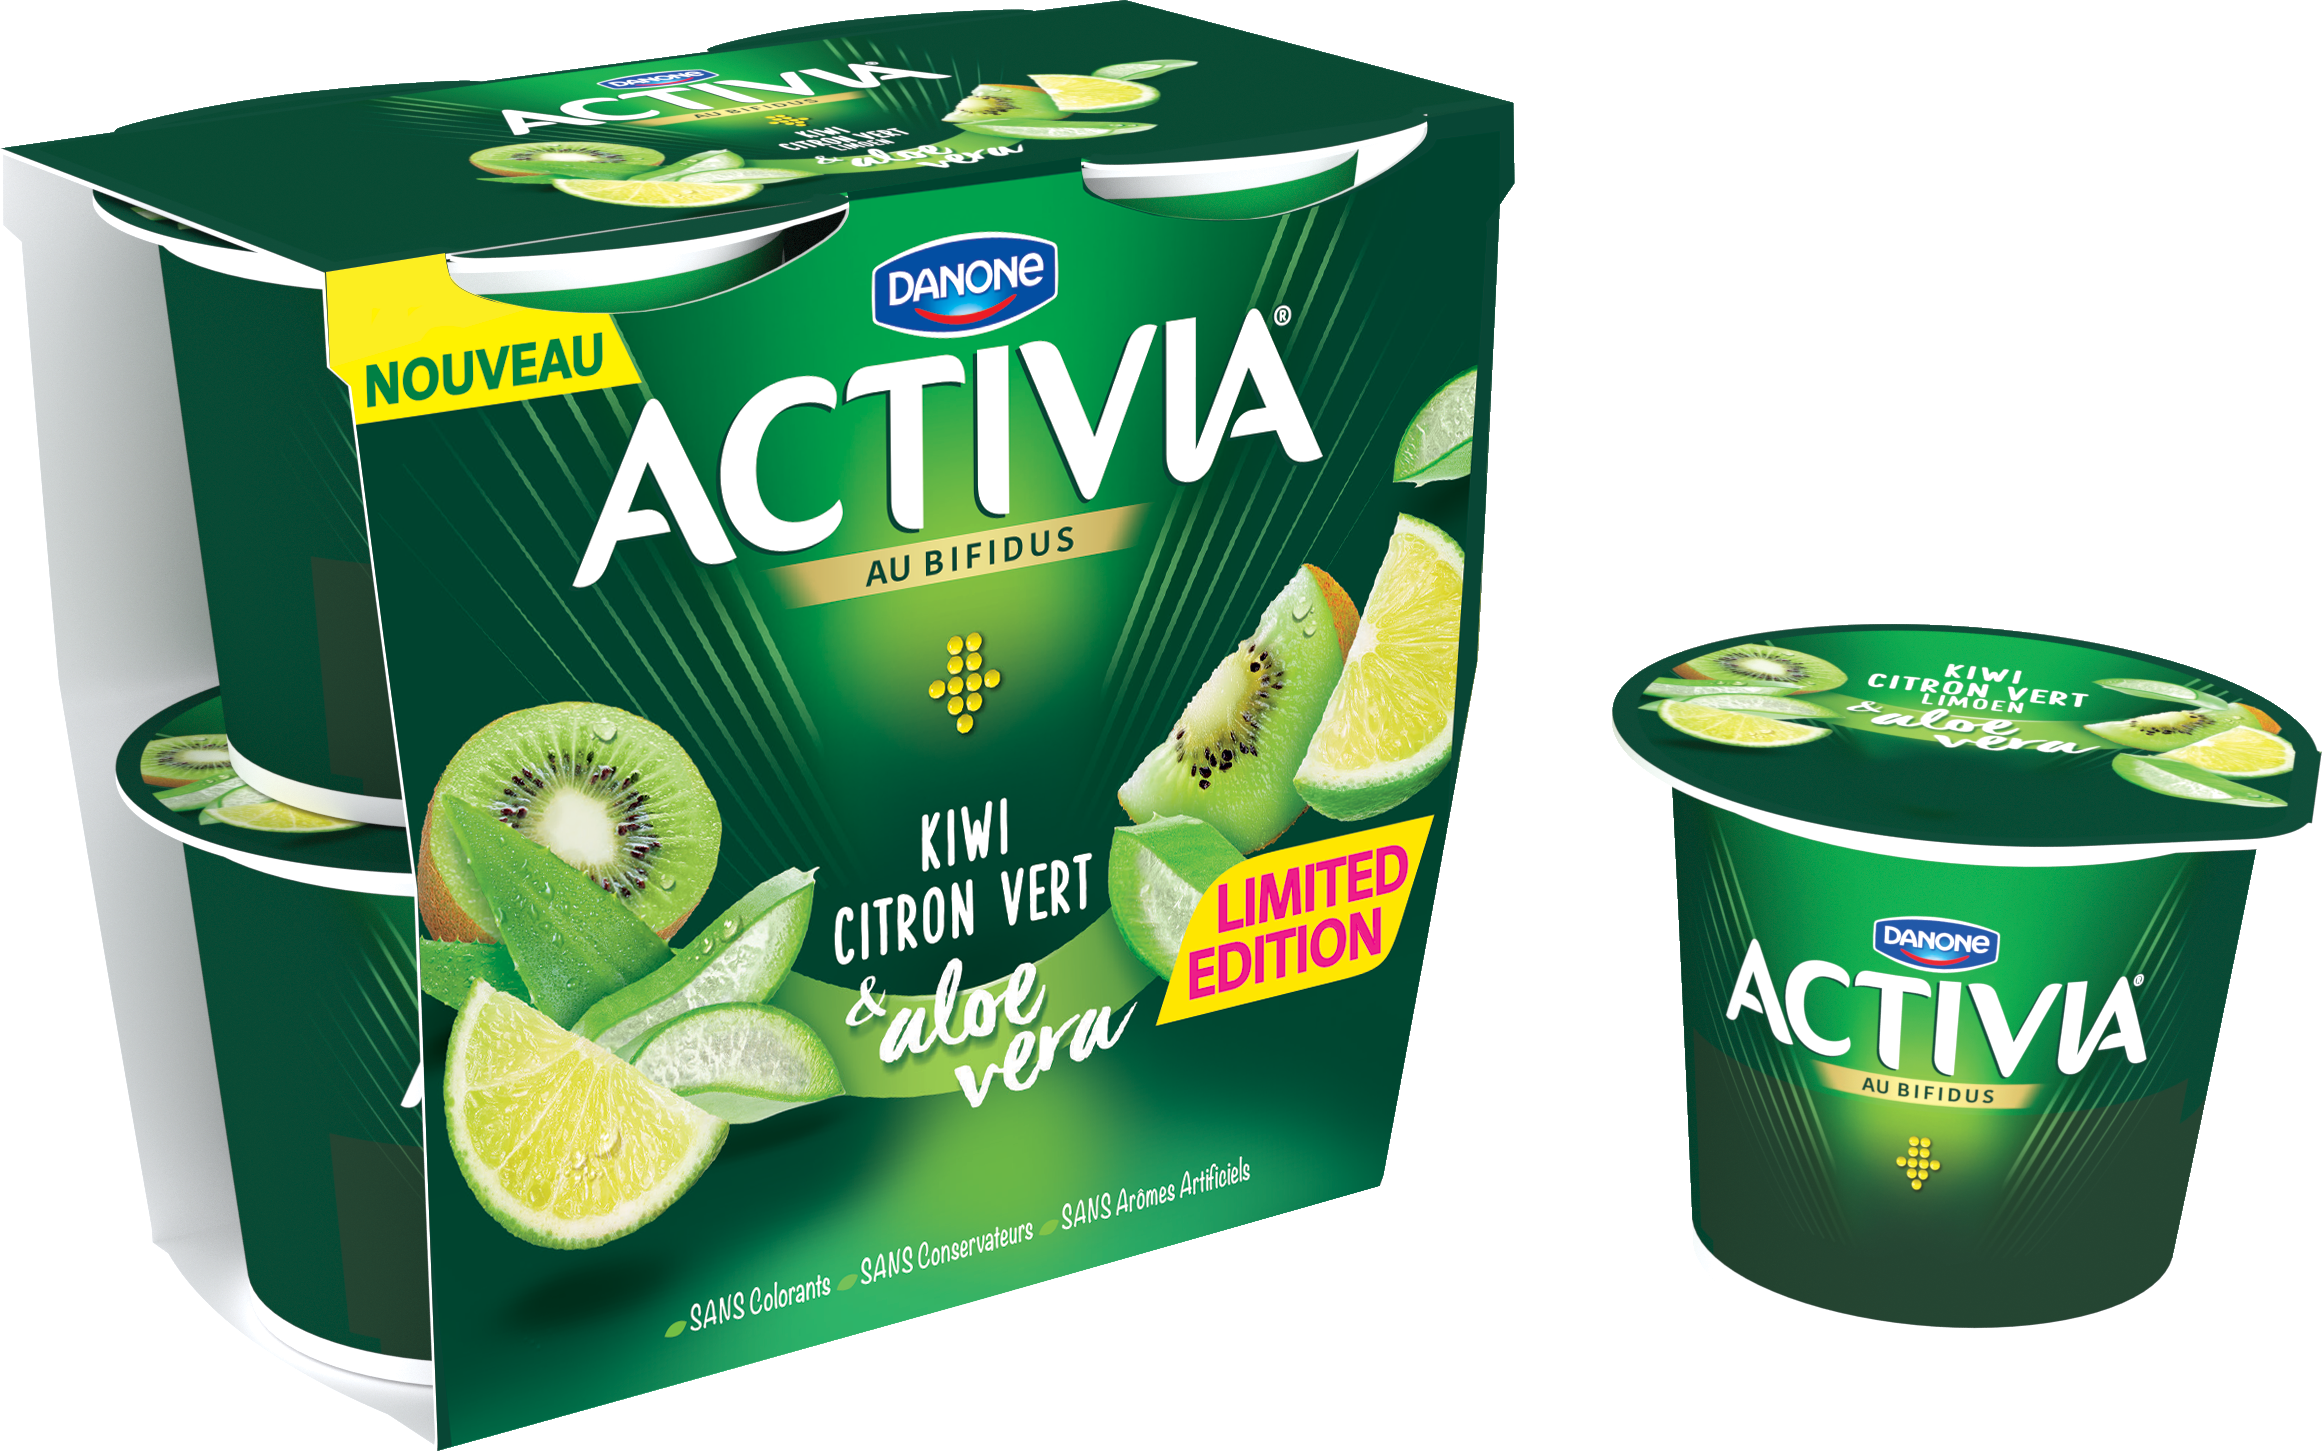 Activia lanceert een limited edition: Kiwi Limoen & Aloë Vera